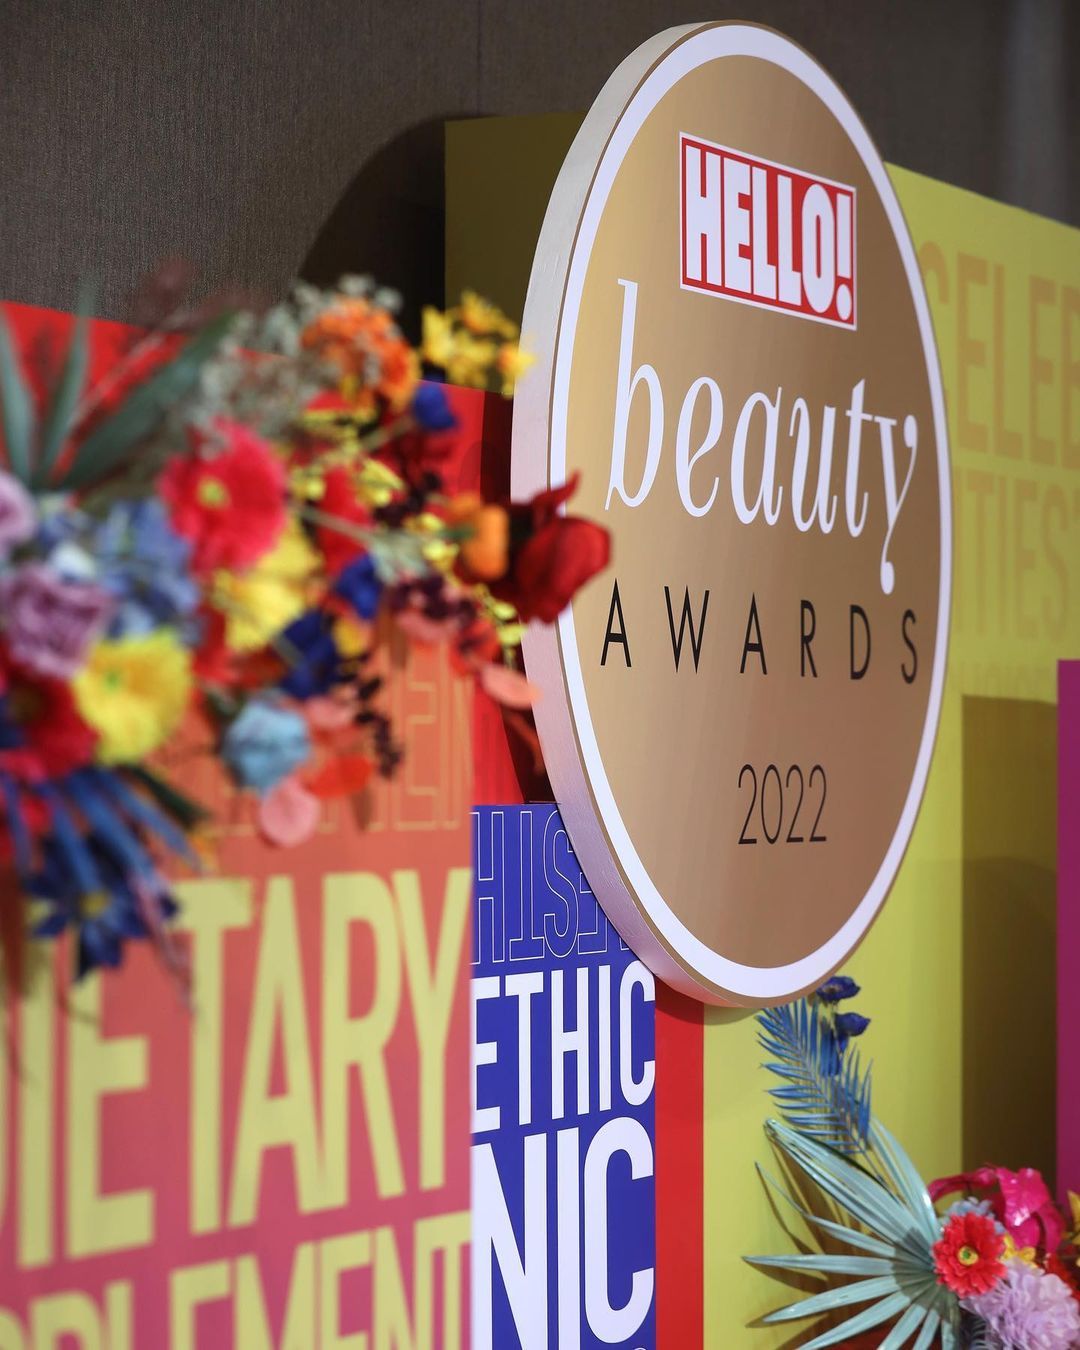 HELLO! Beauty Awards 2022 Backdrop